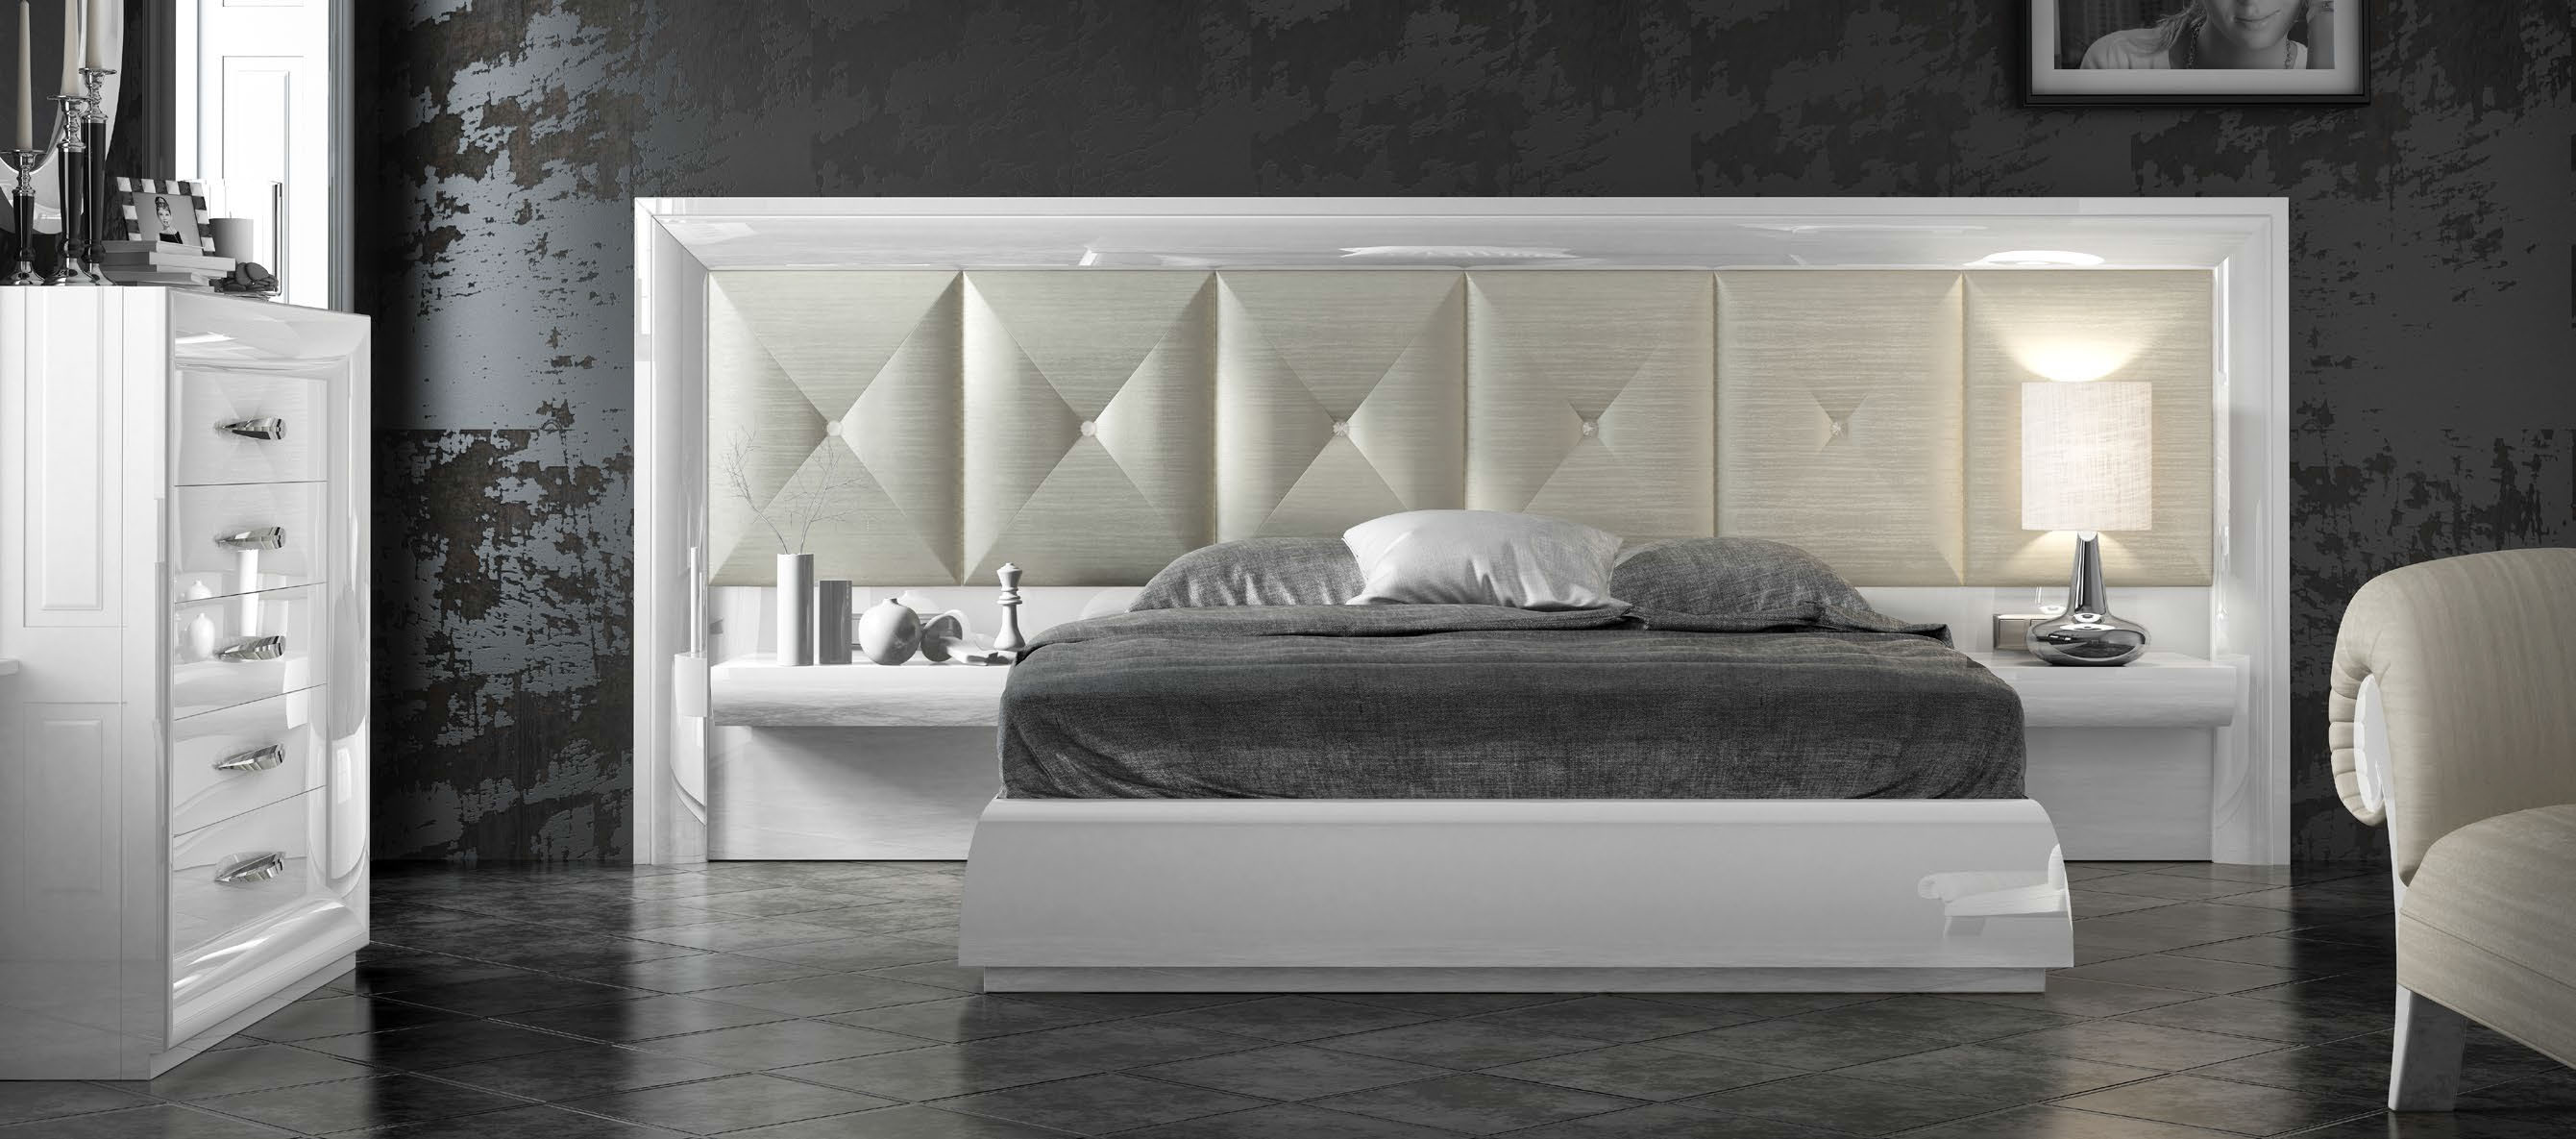 Brands MCS Classic Bedrooms, Italy DOR 134